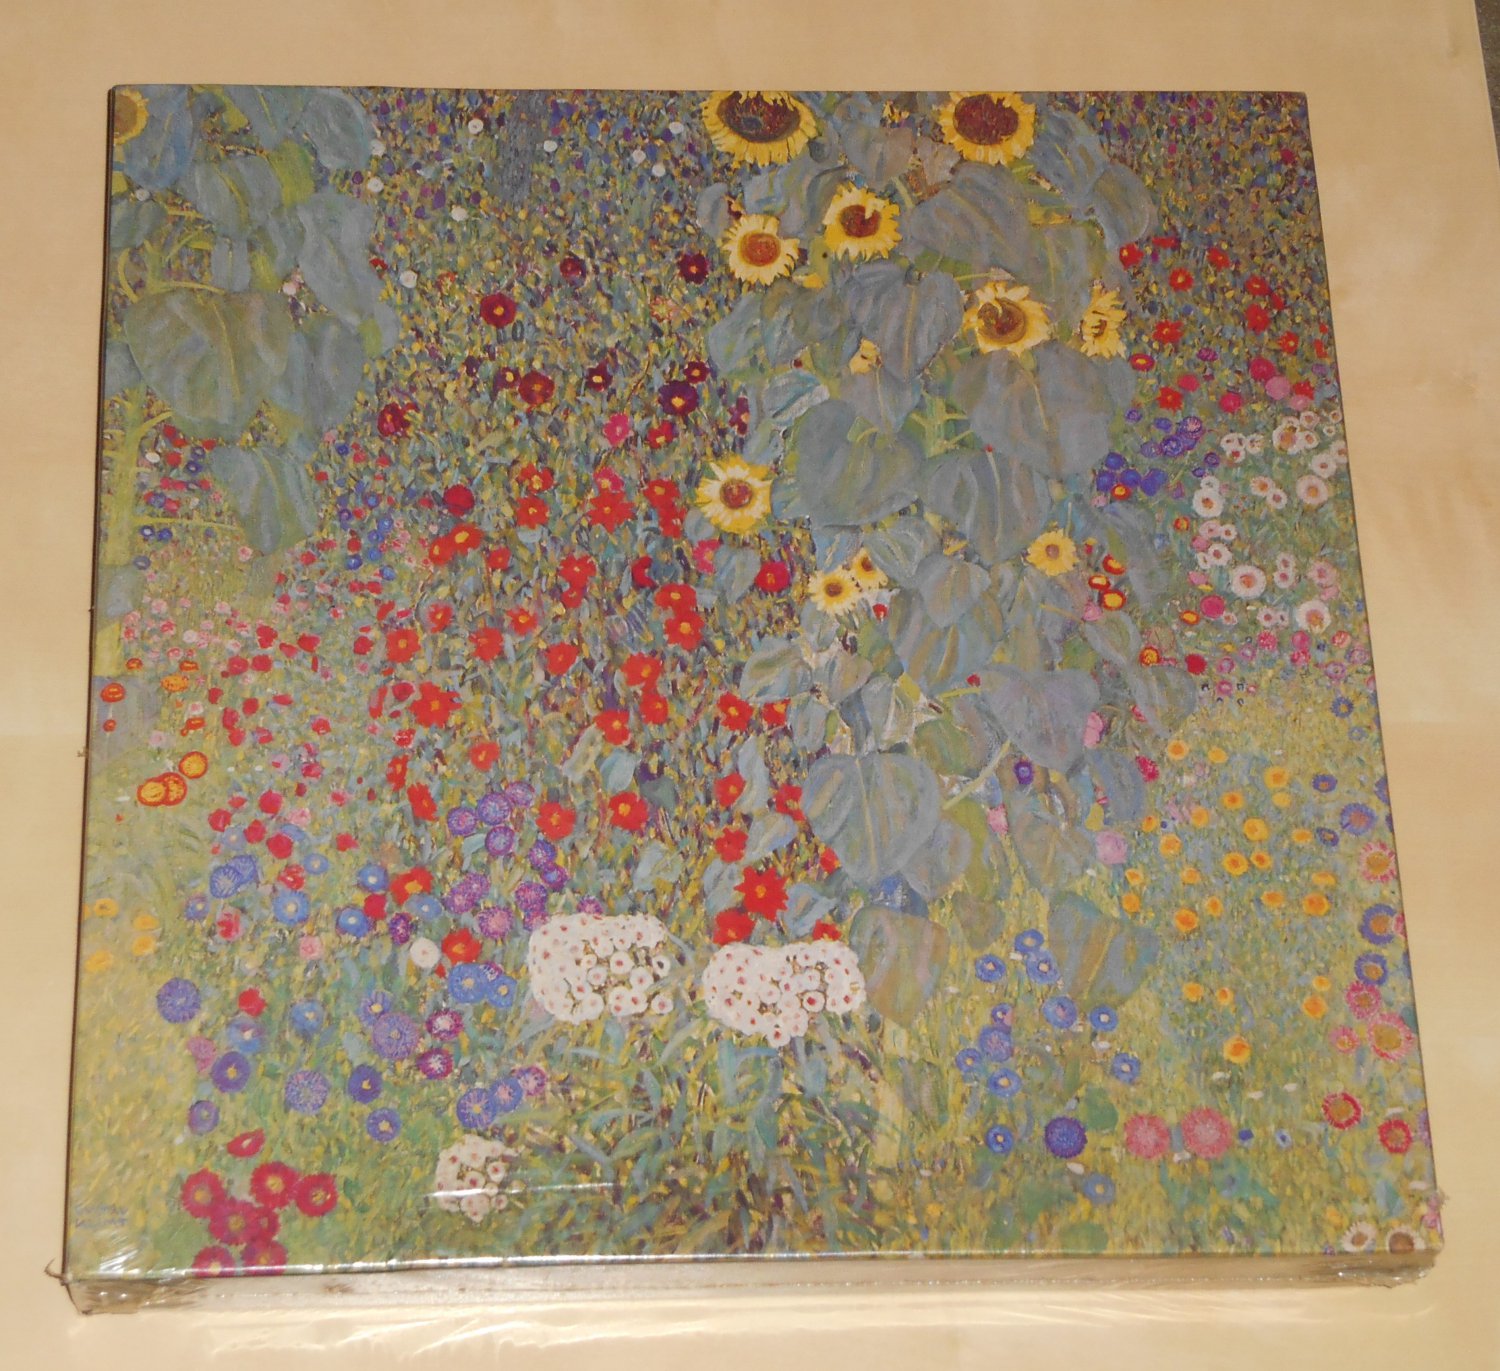 Farm Garden With Sunflowers 500 Piece Square Jigsaw Puzzle Gustav Klimt PZL2057 NIB 1973